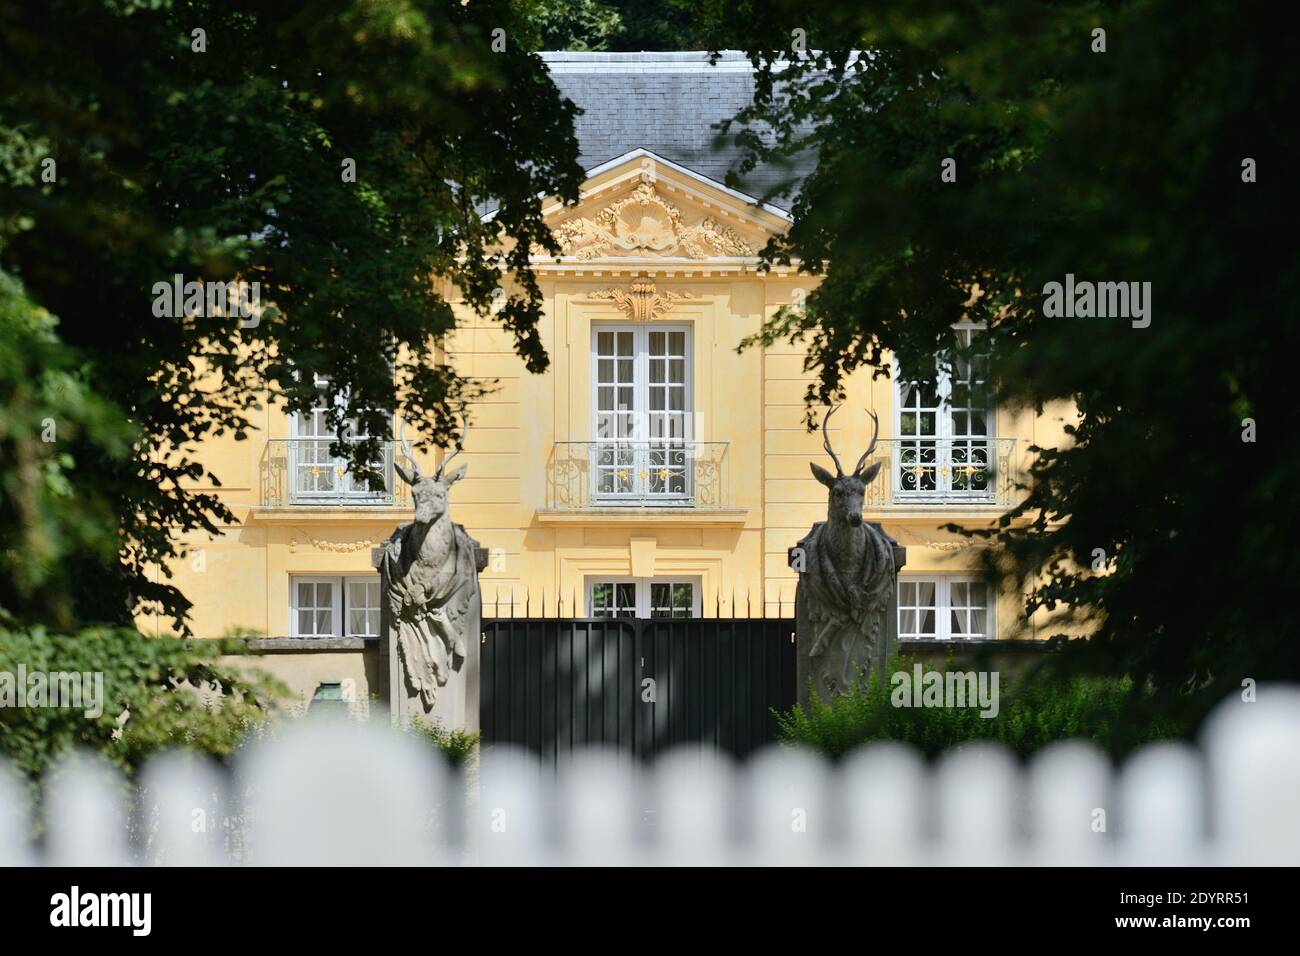 Vue sur le Pavillon de la Lanterne à Versailles, France, le 13 août 2013.  Le président français François Hollande passera ses vacances d'été dans cet  ancien pavillon de chasse près du château